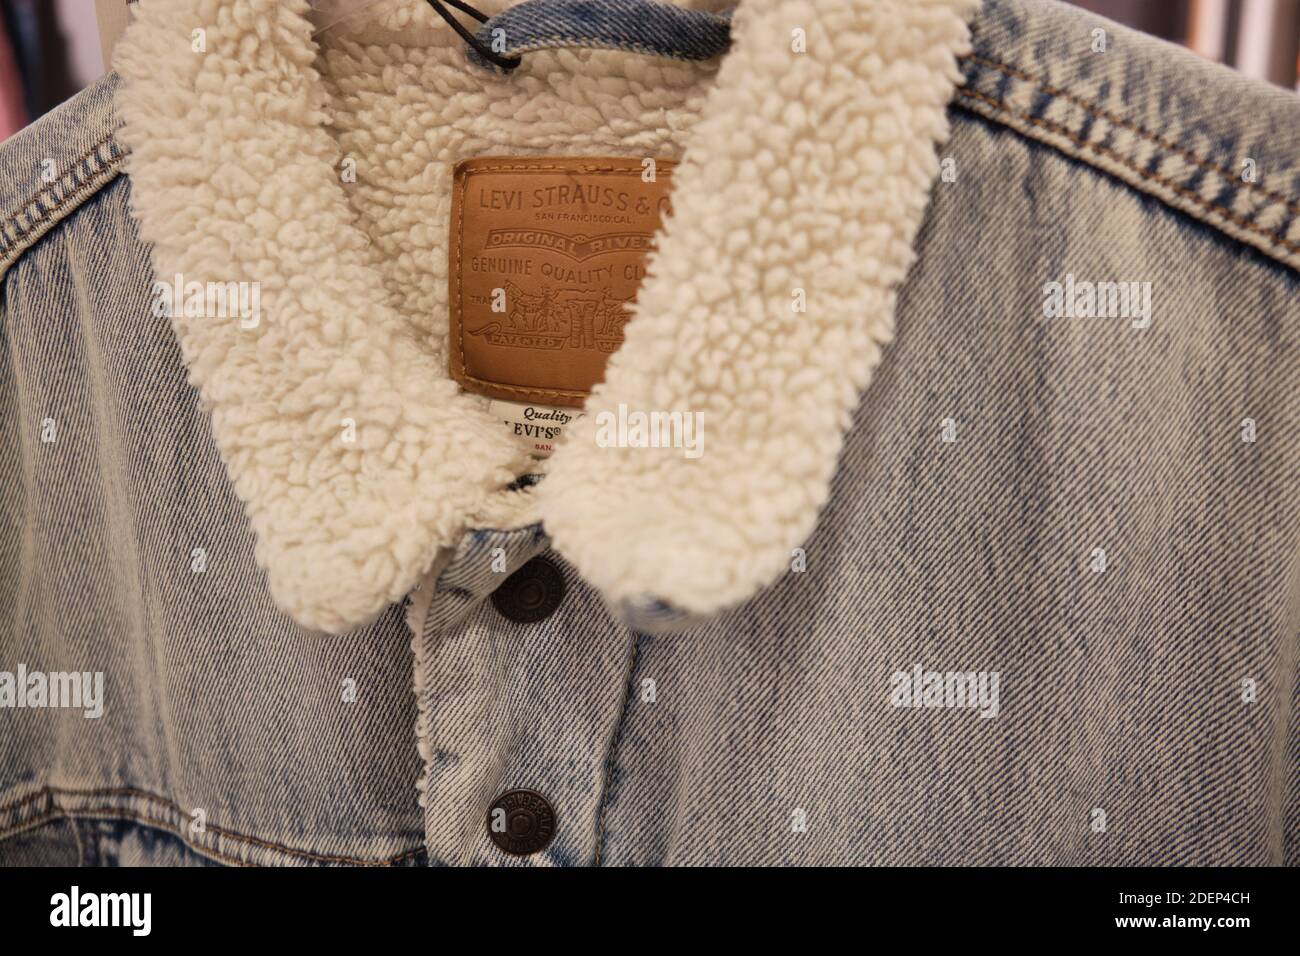 Levis Sherpa Trucker Jacket. Levi Strauss warm denim jacket Stock Photo -  Alamy